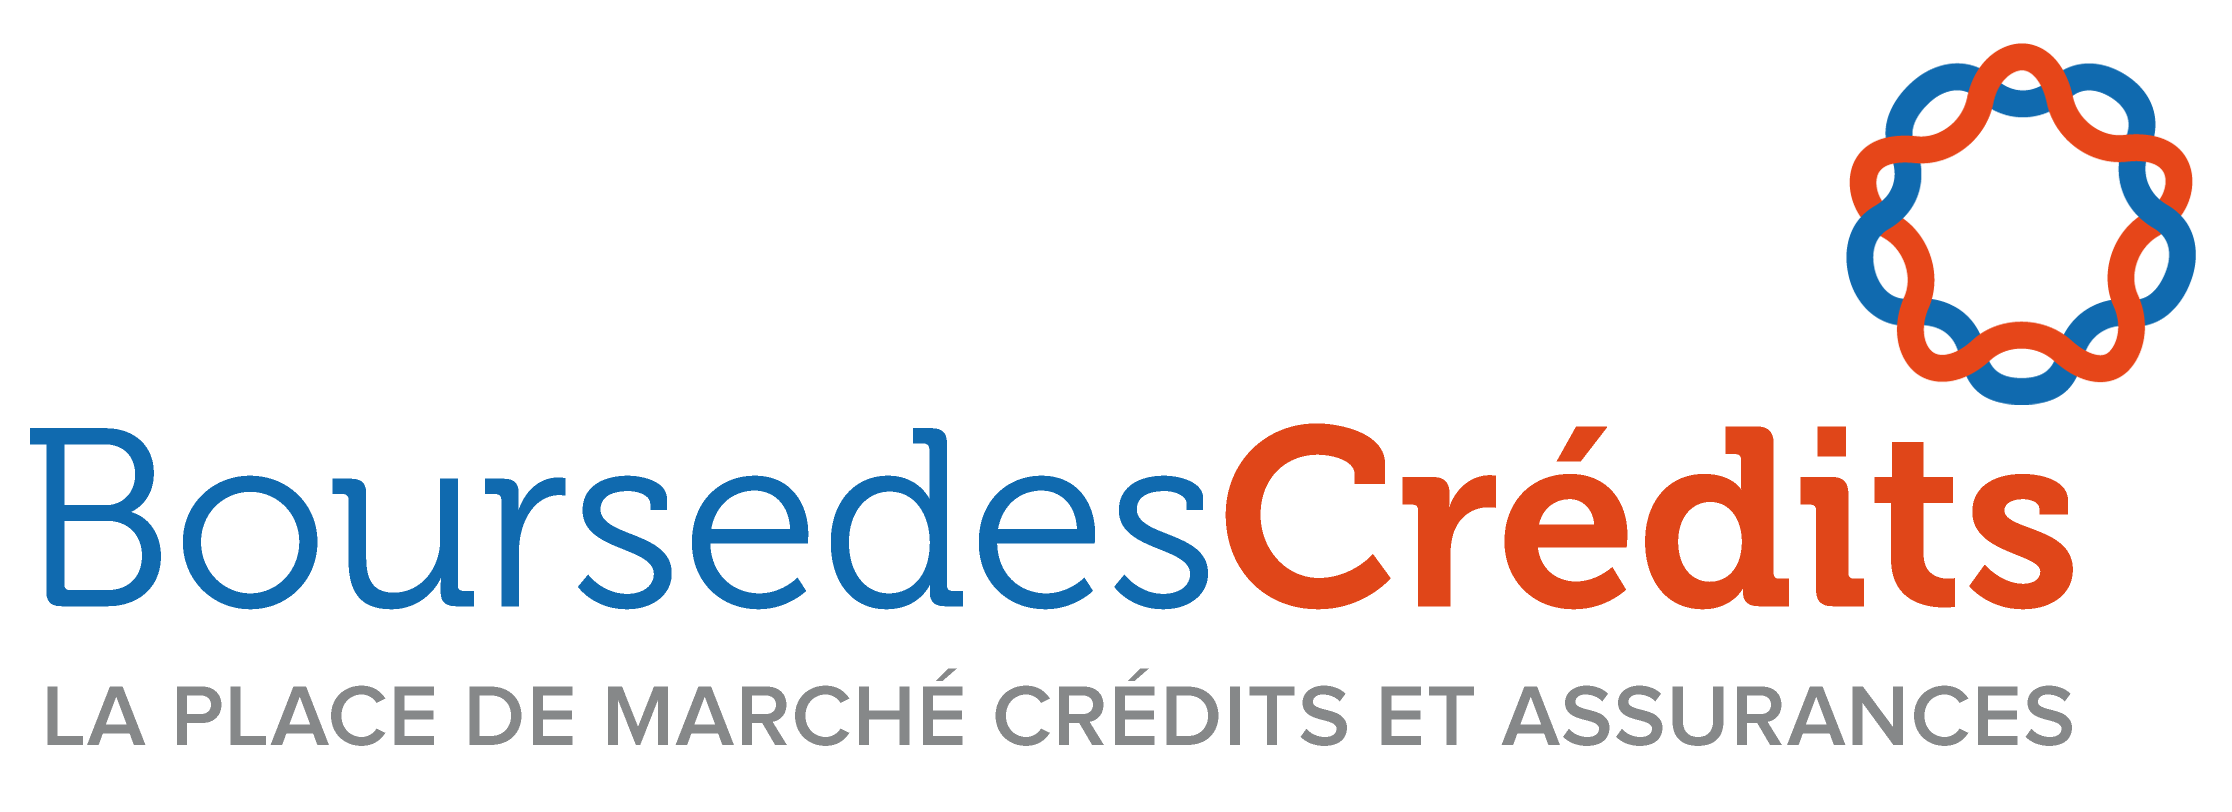 BoursedesCrédits.com